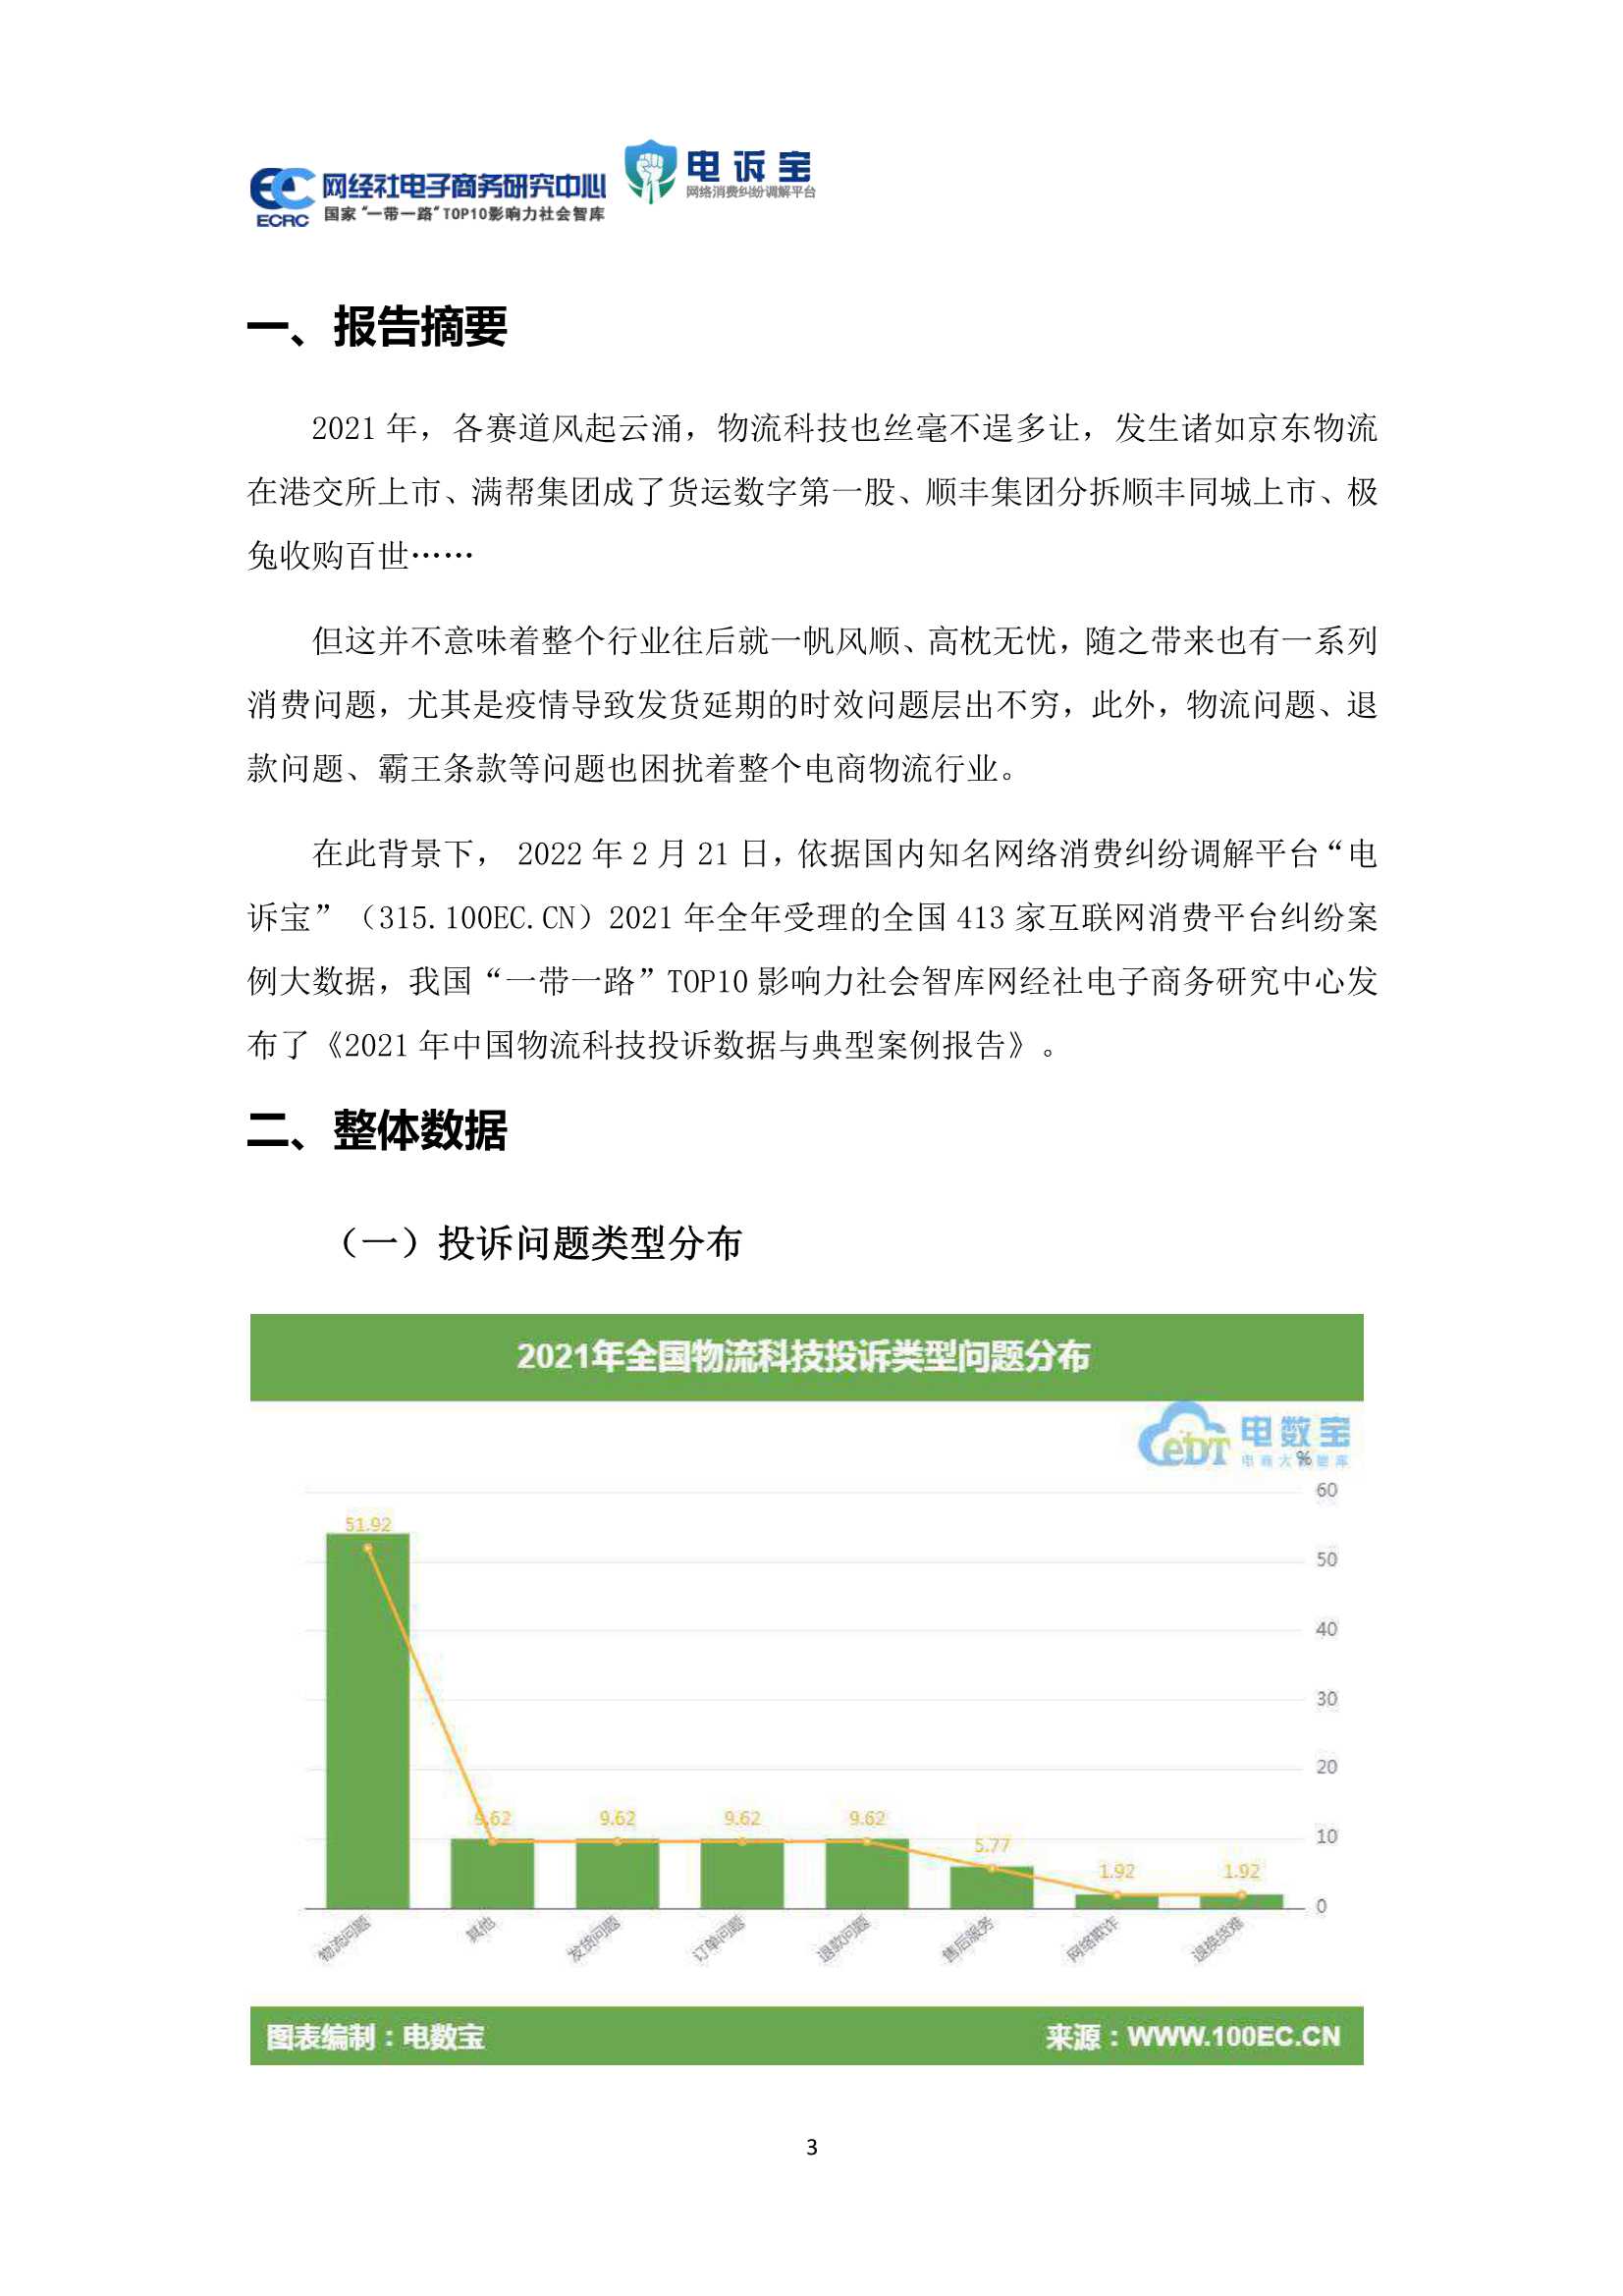 网经社-2021年中国物流科技投诉数据与典型案例报告 -2022.02-24页